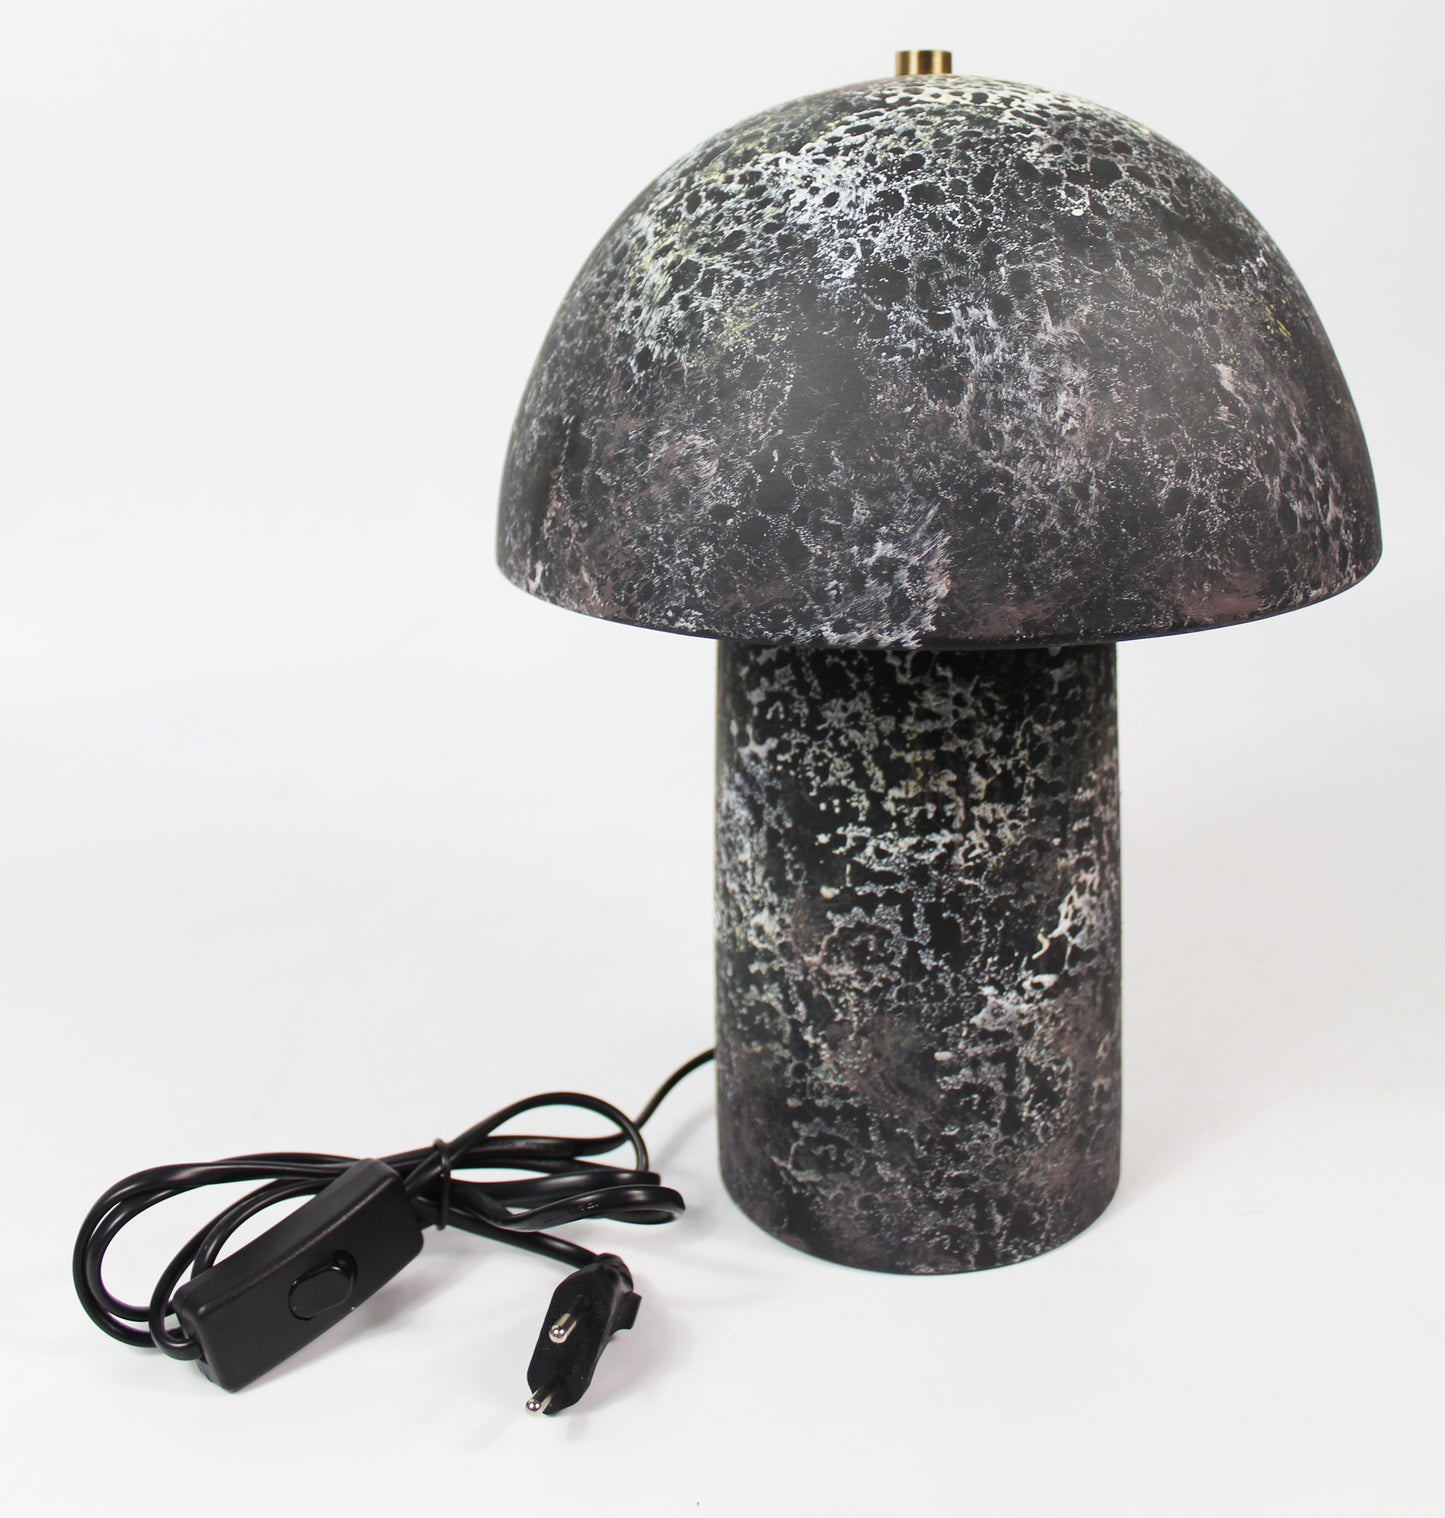 Tischlampe Pilz 23x30 cm Keramik in Steinoptik Nachttischlampe Tischleuchte